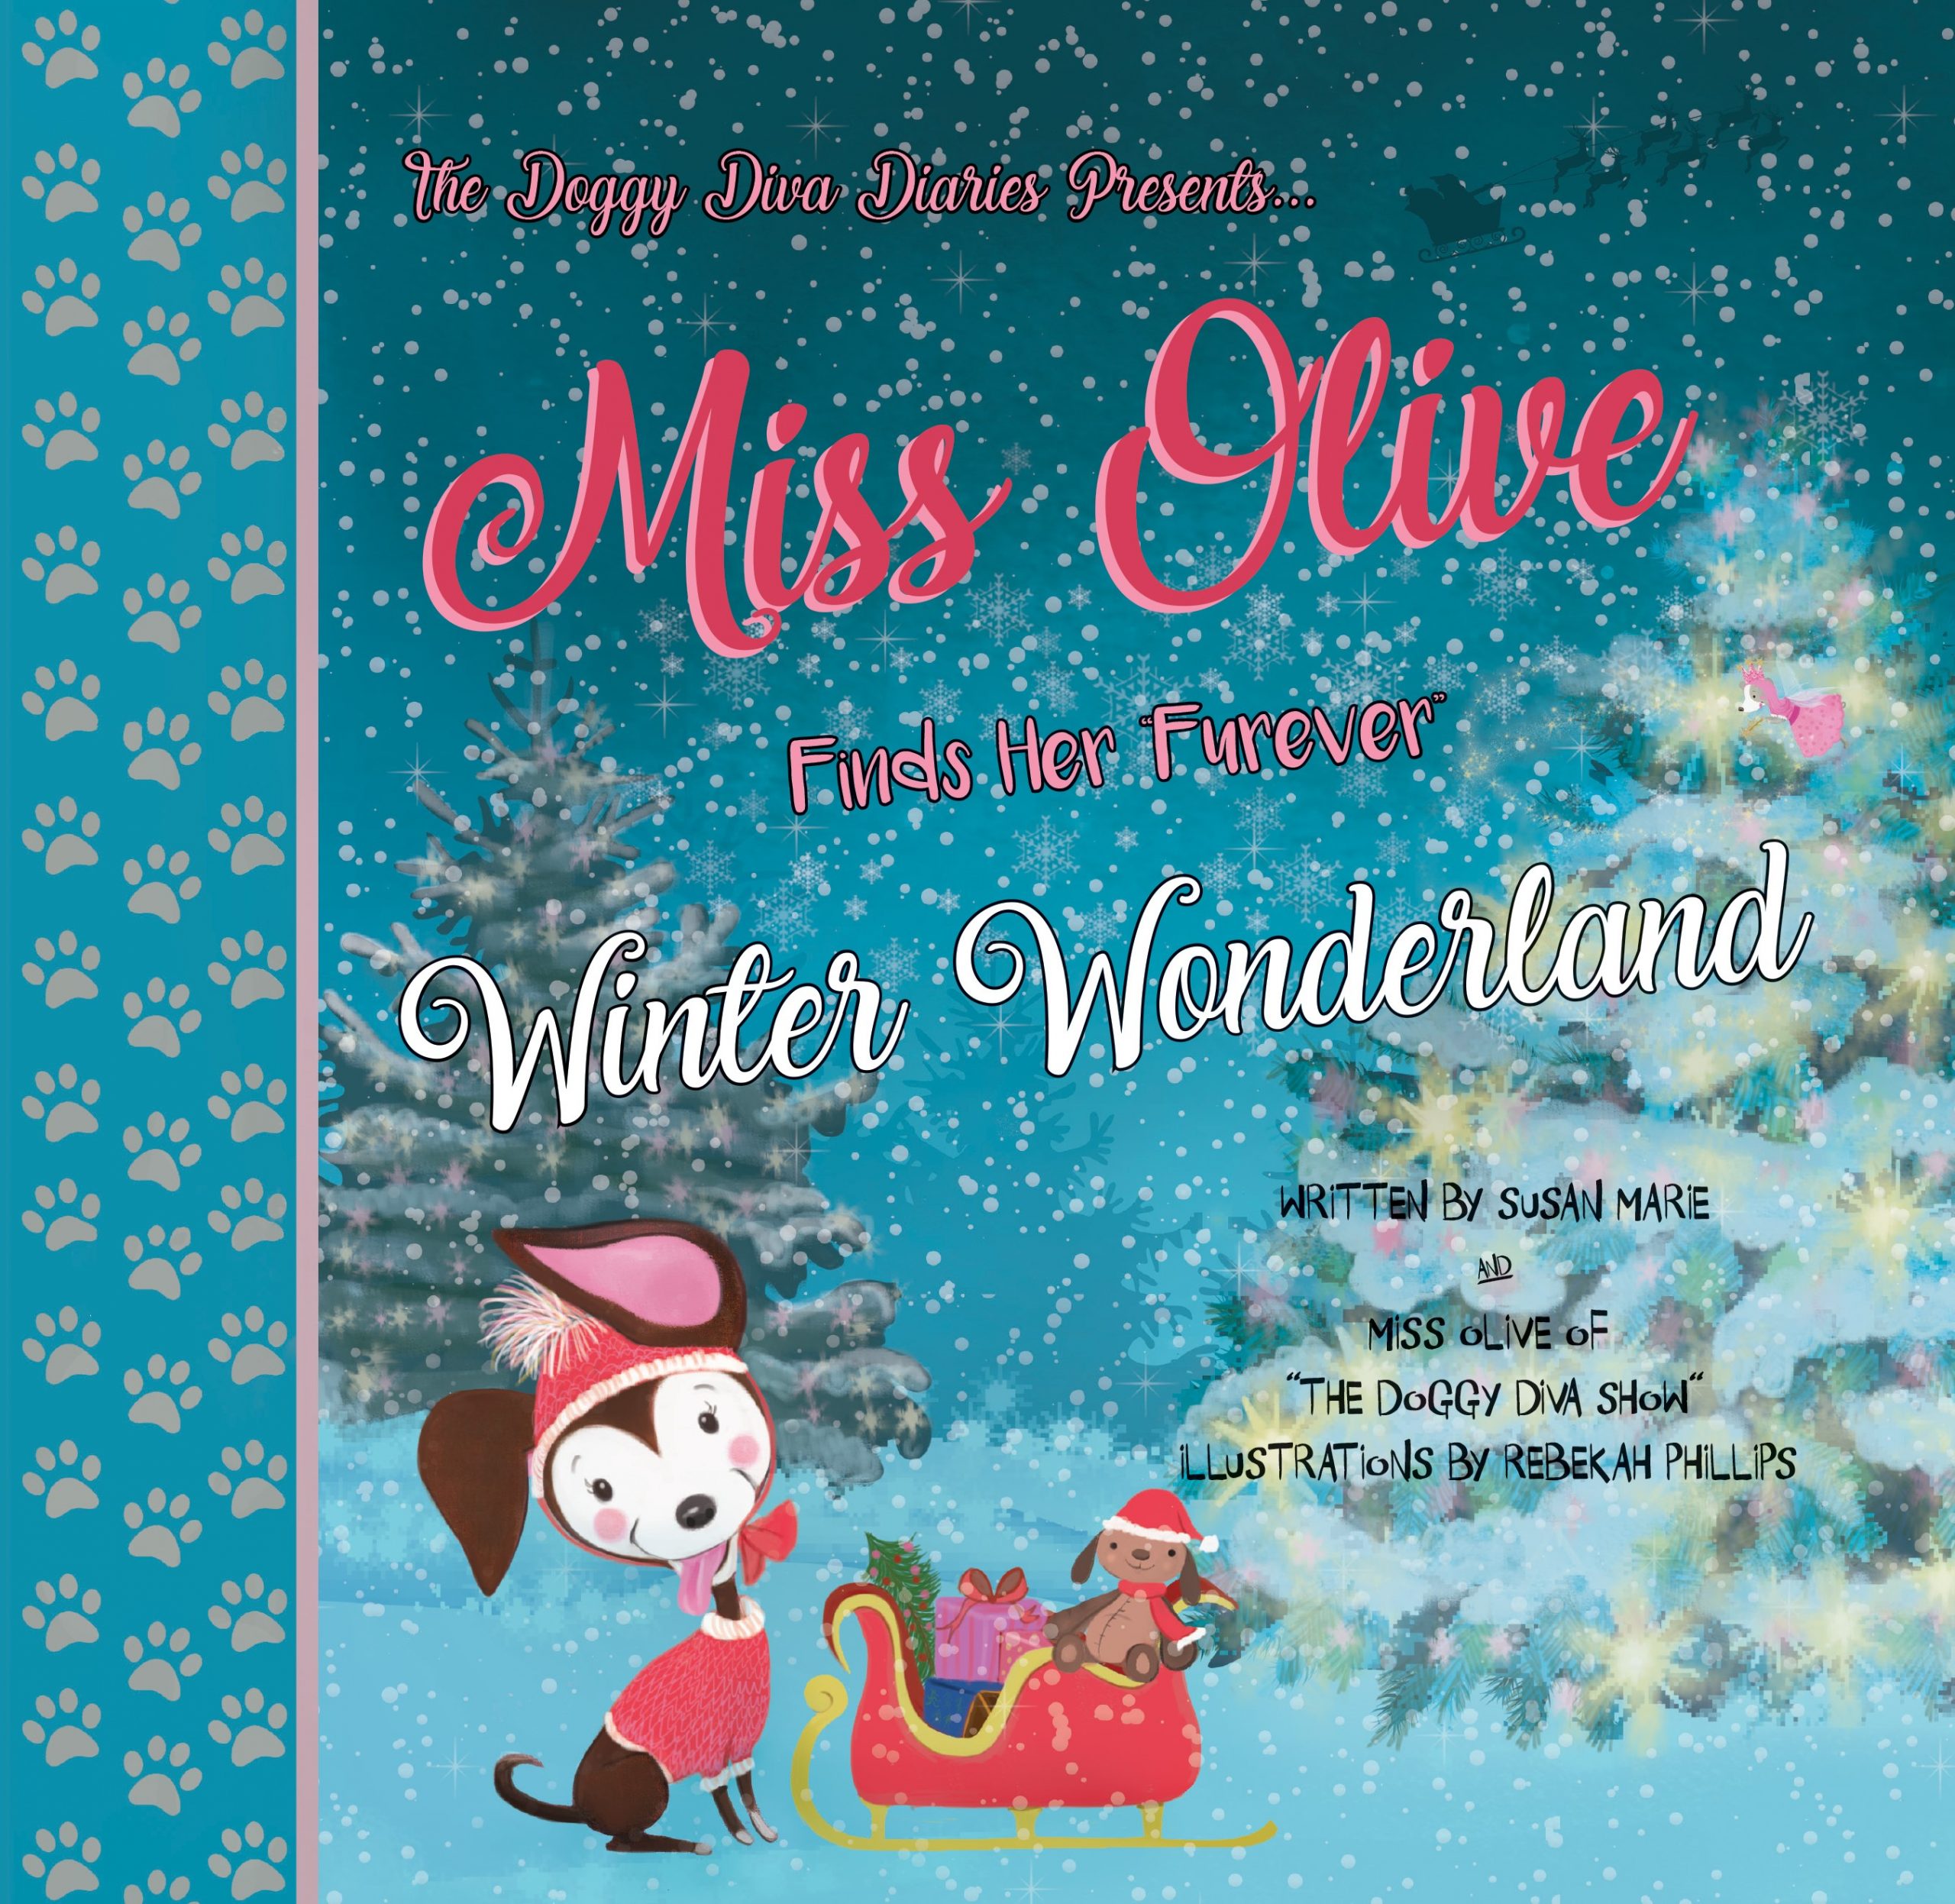 Miss Olive Finds Her “Furever” Winter Wonderland